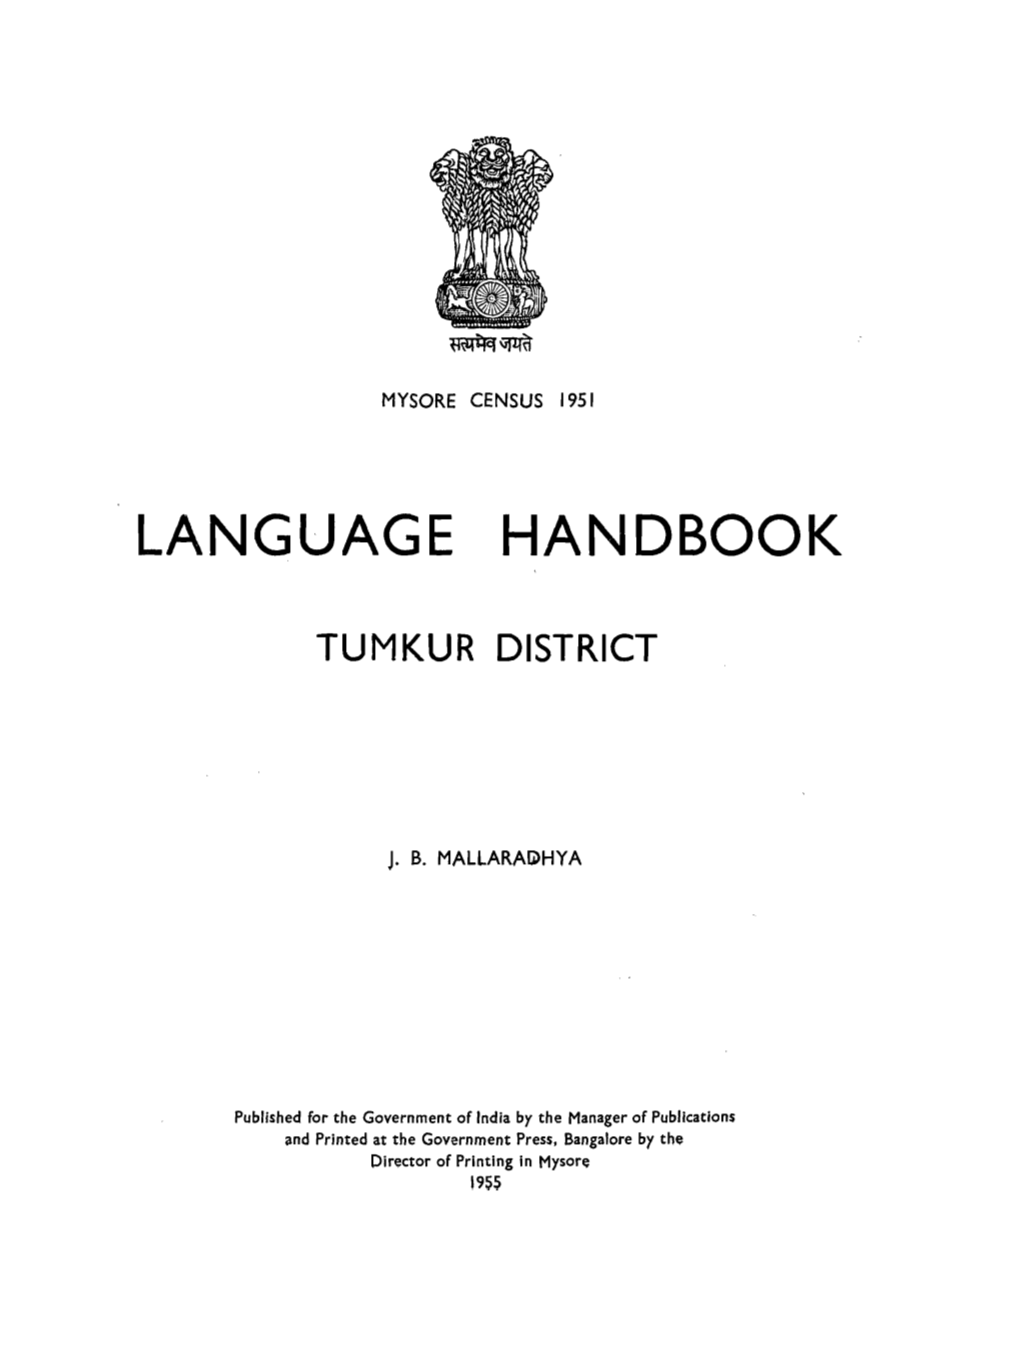 Language Handbook, Tumkur